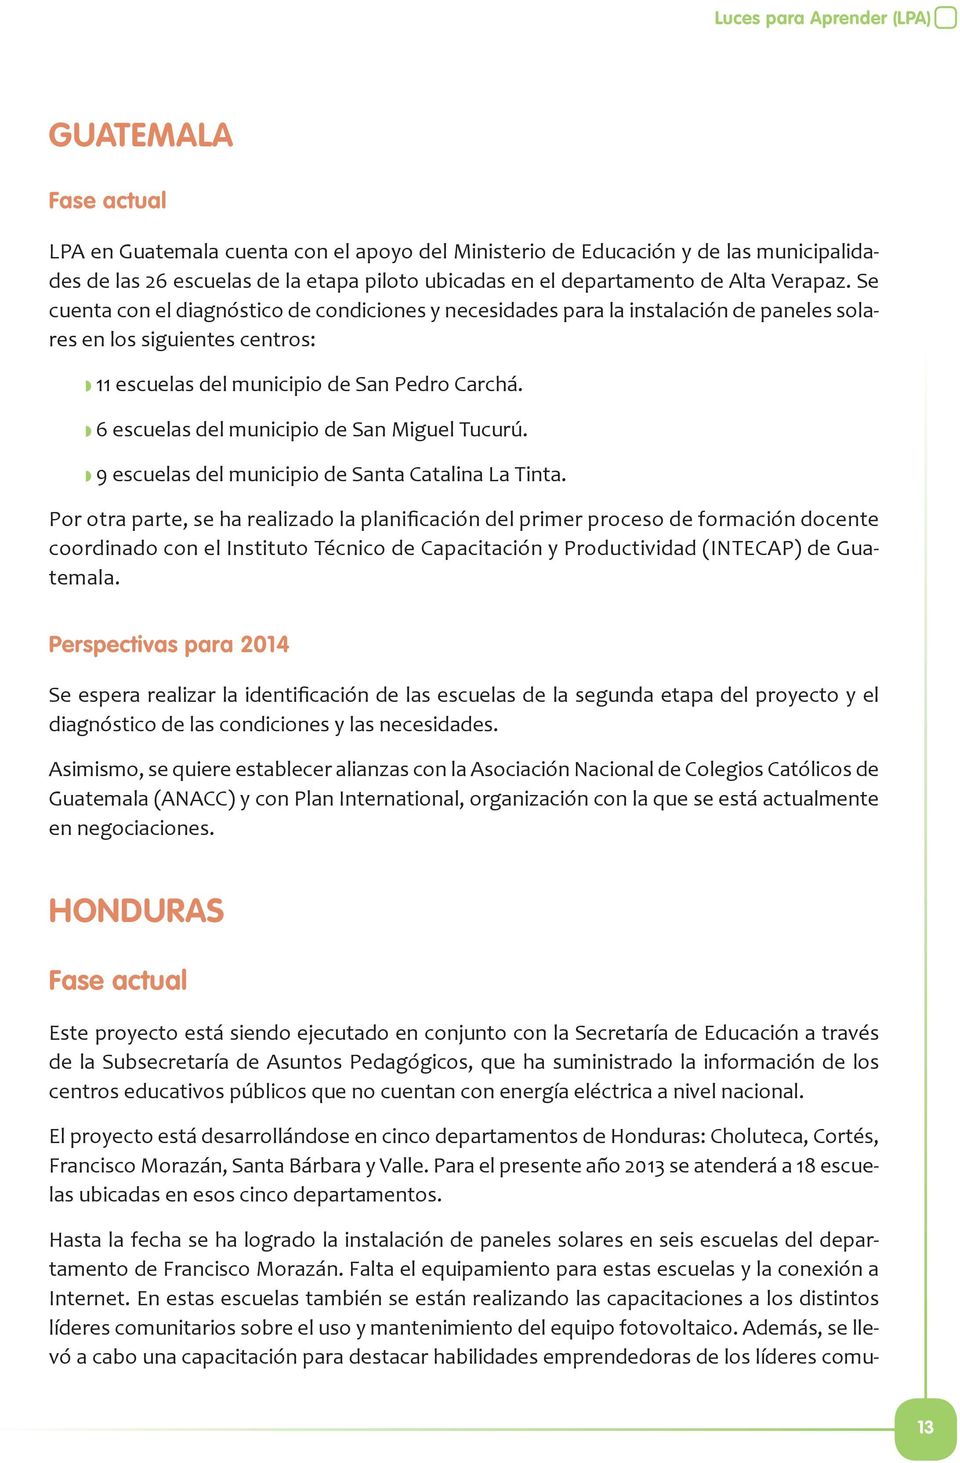 6 escuelas del municipio de San Miguel Tucurú. 9 escuelas del municipio de Santa Catalina La Tinta.